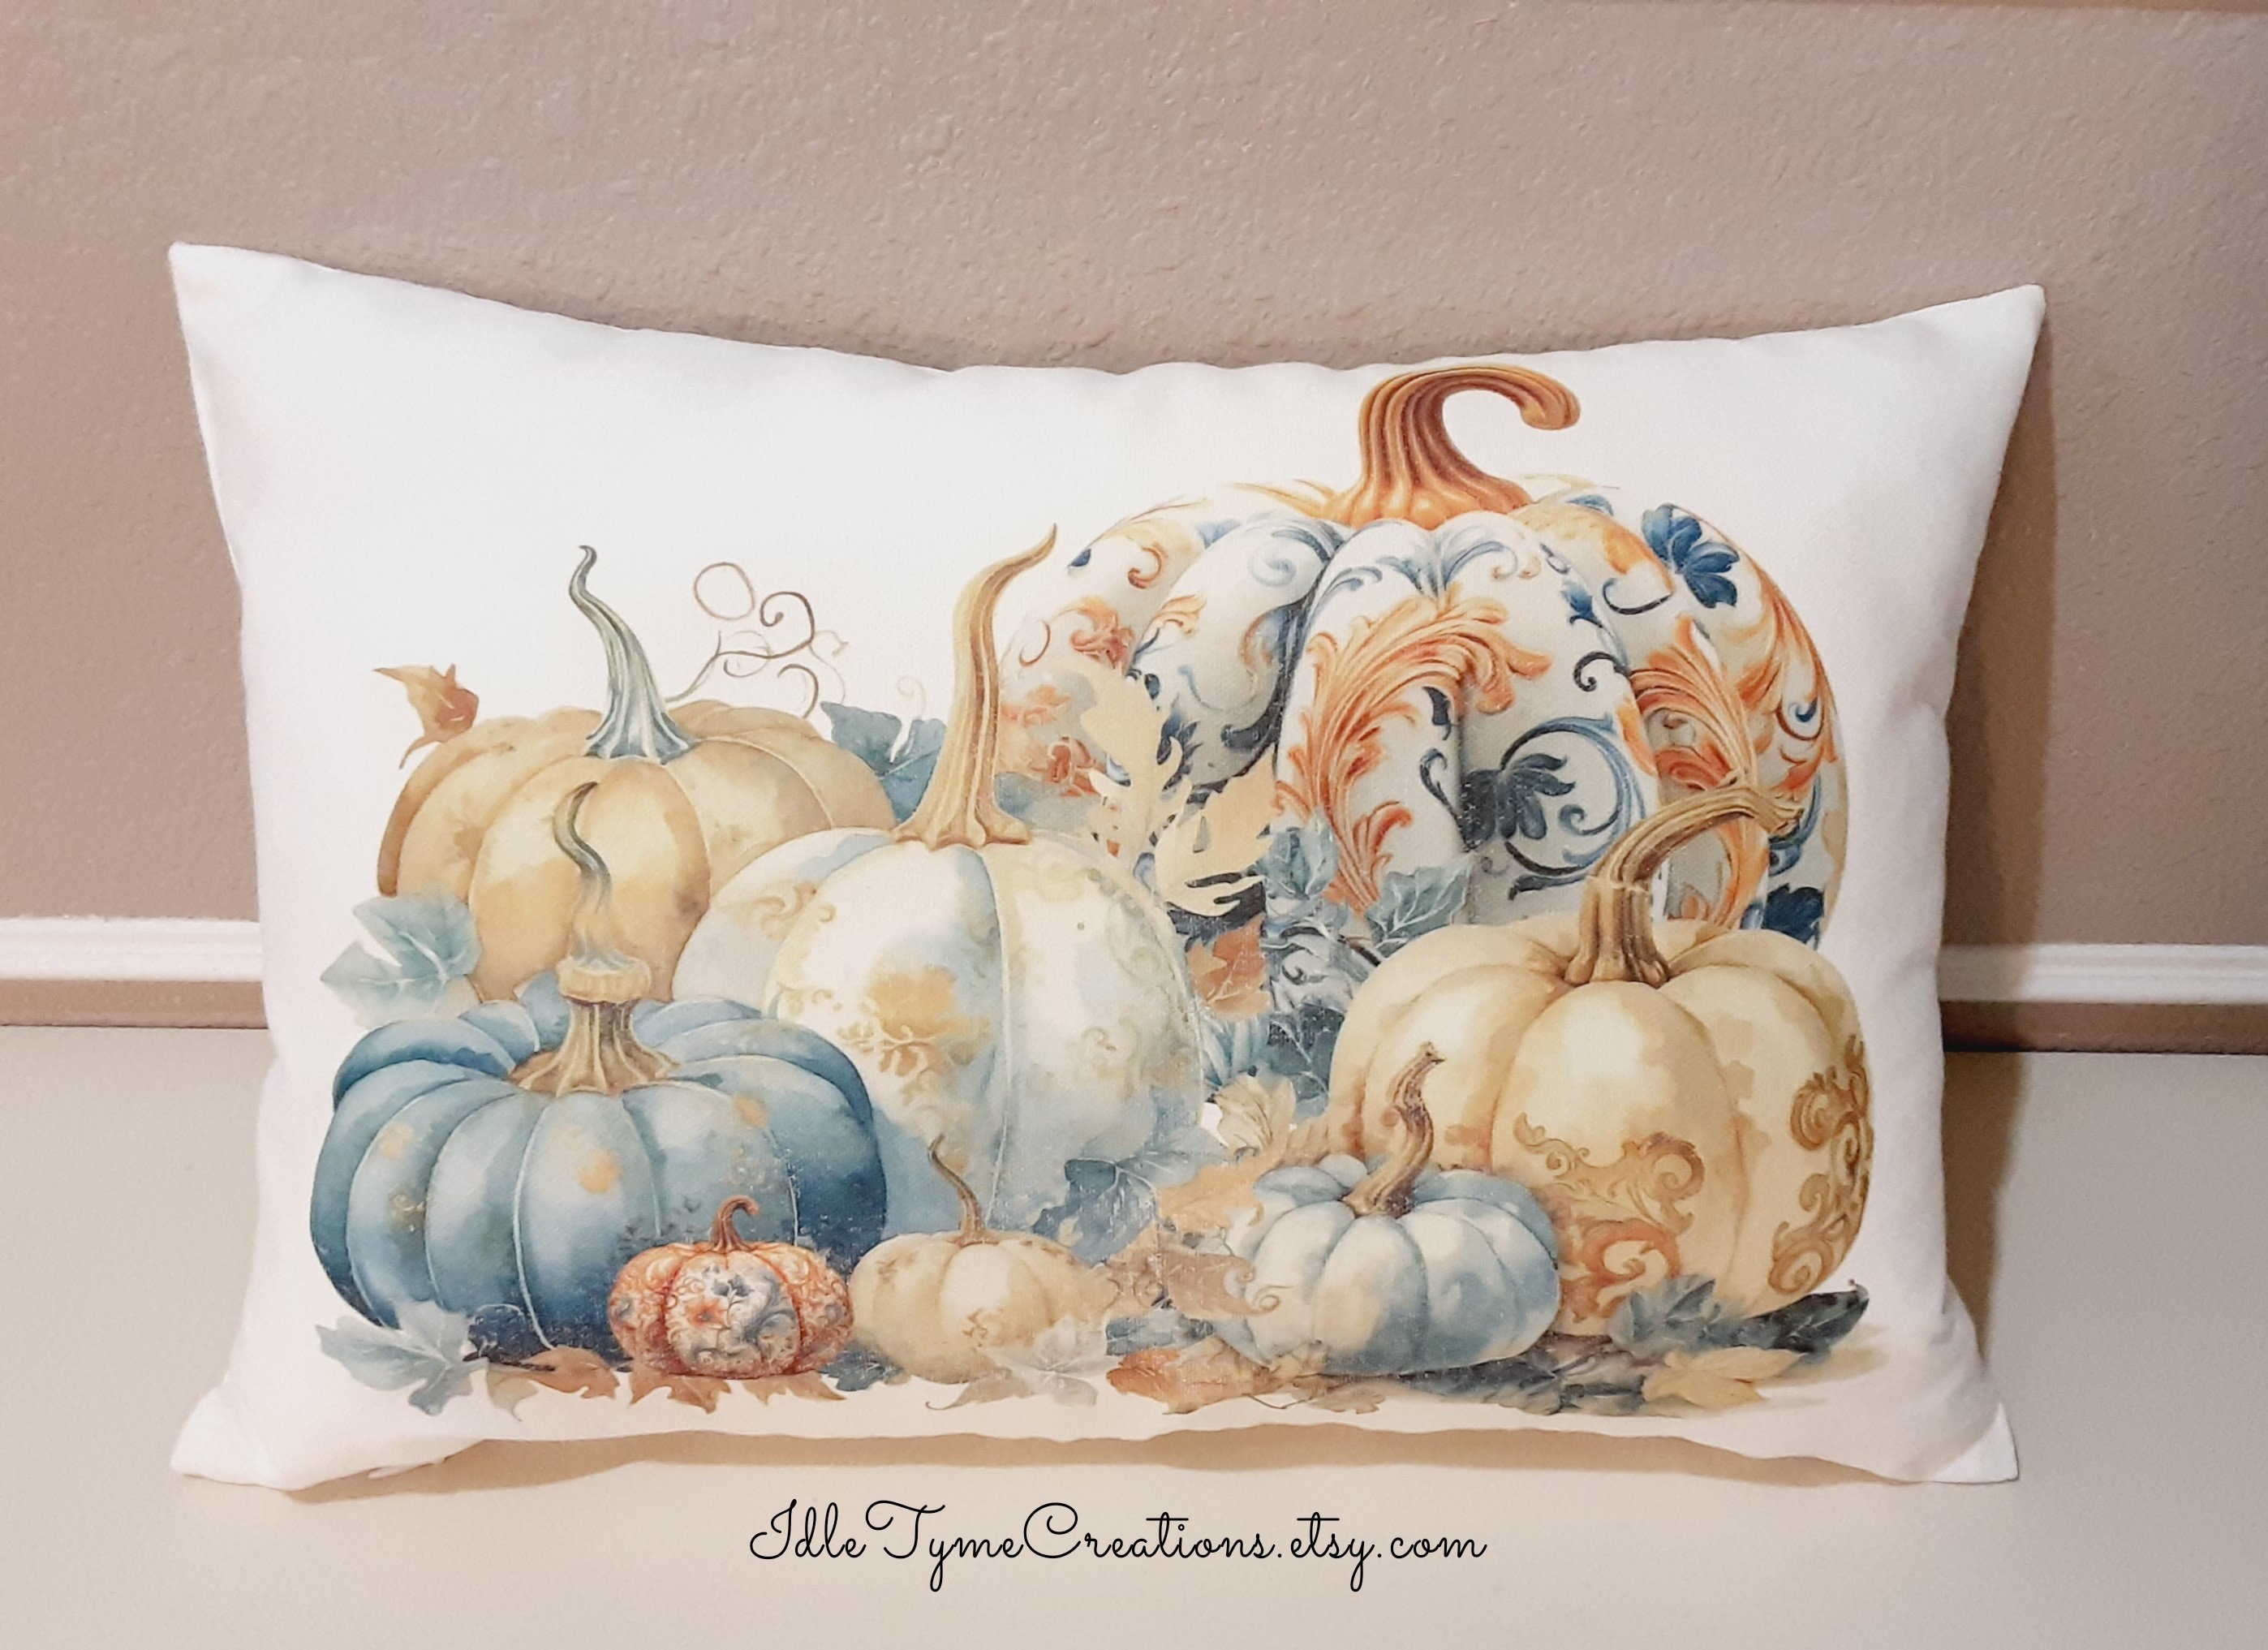 Pumpkin Trio Pillow Cover 18x18 inch